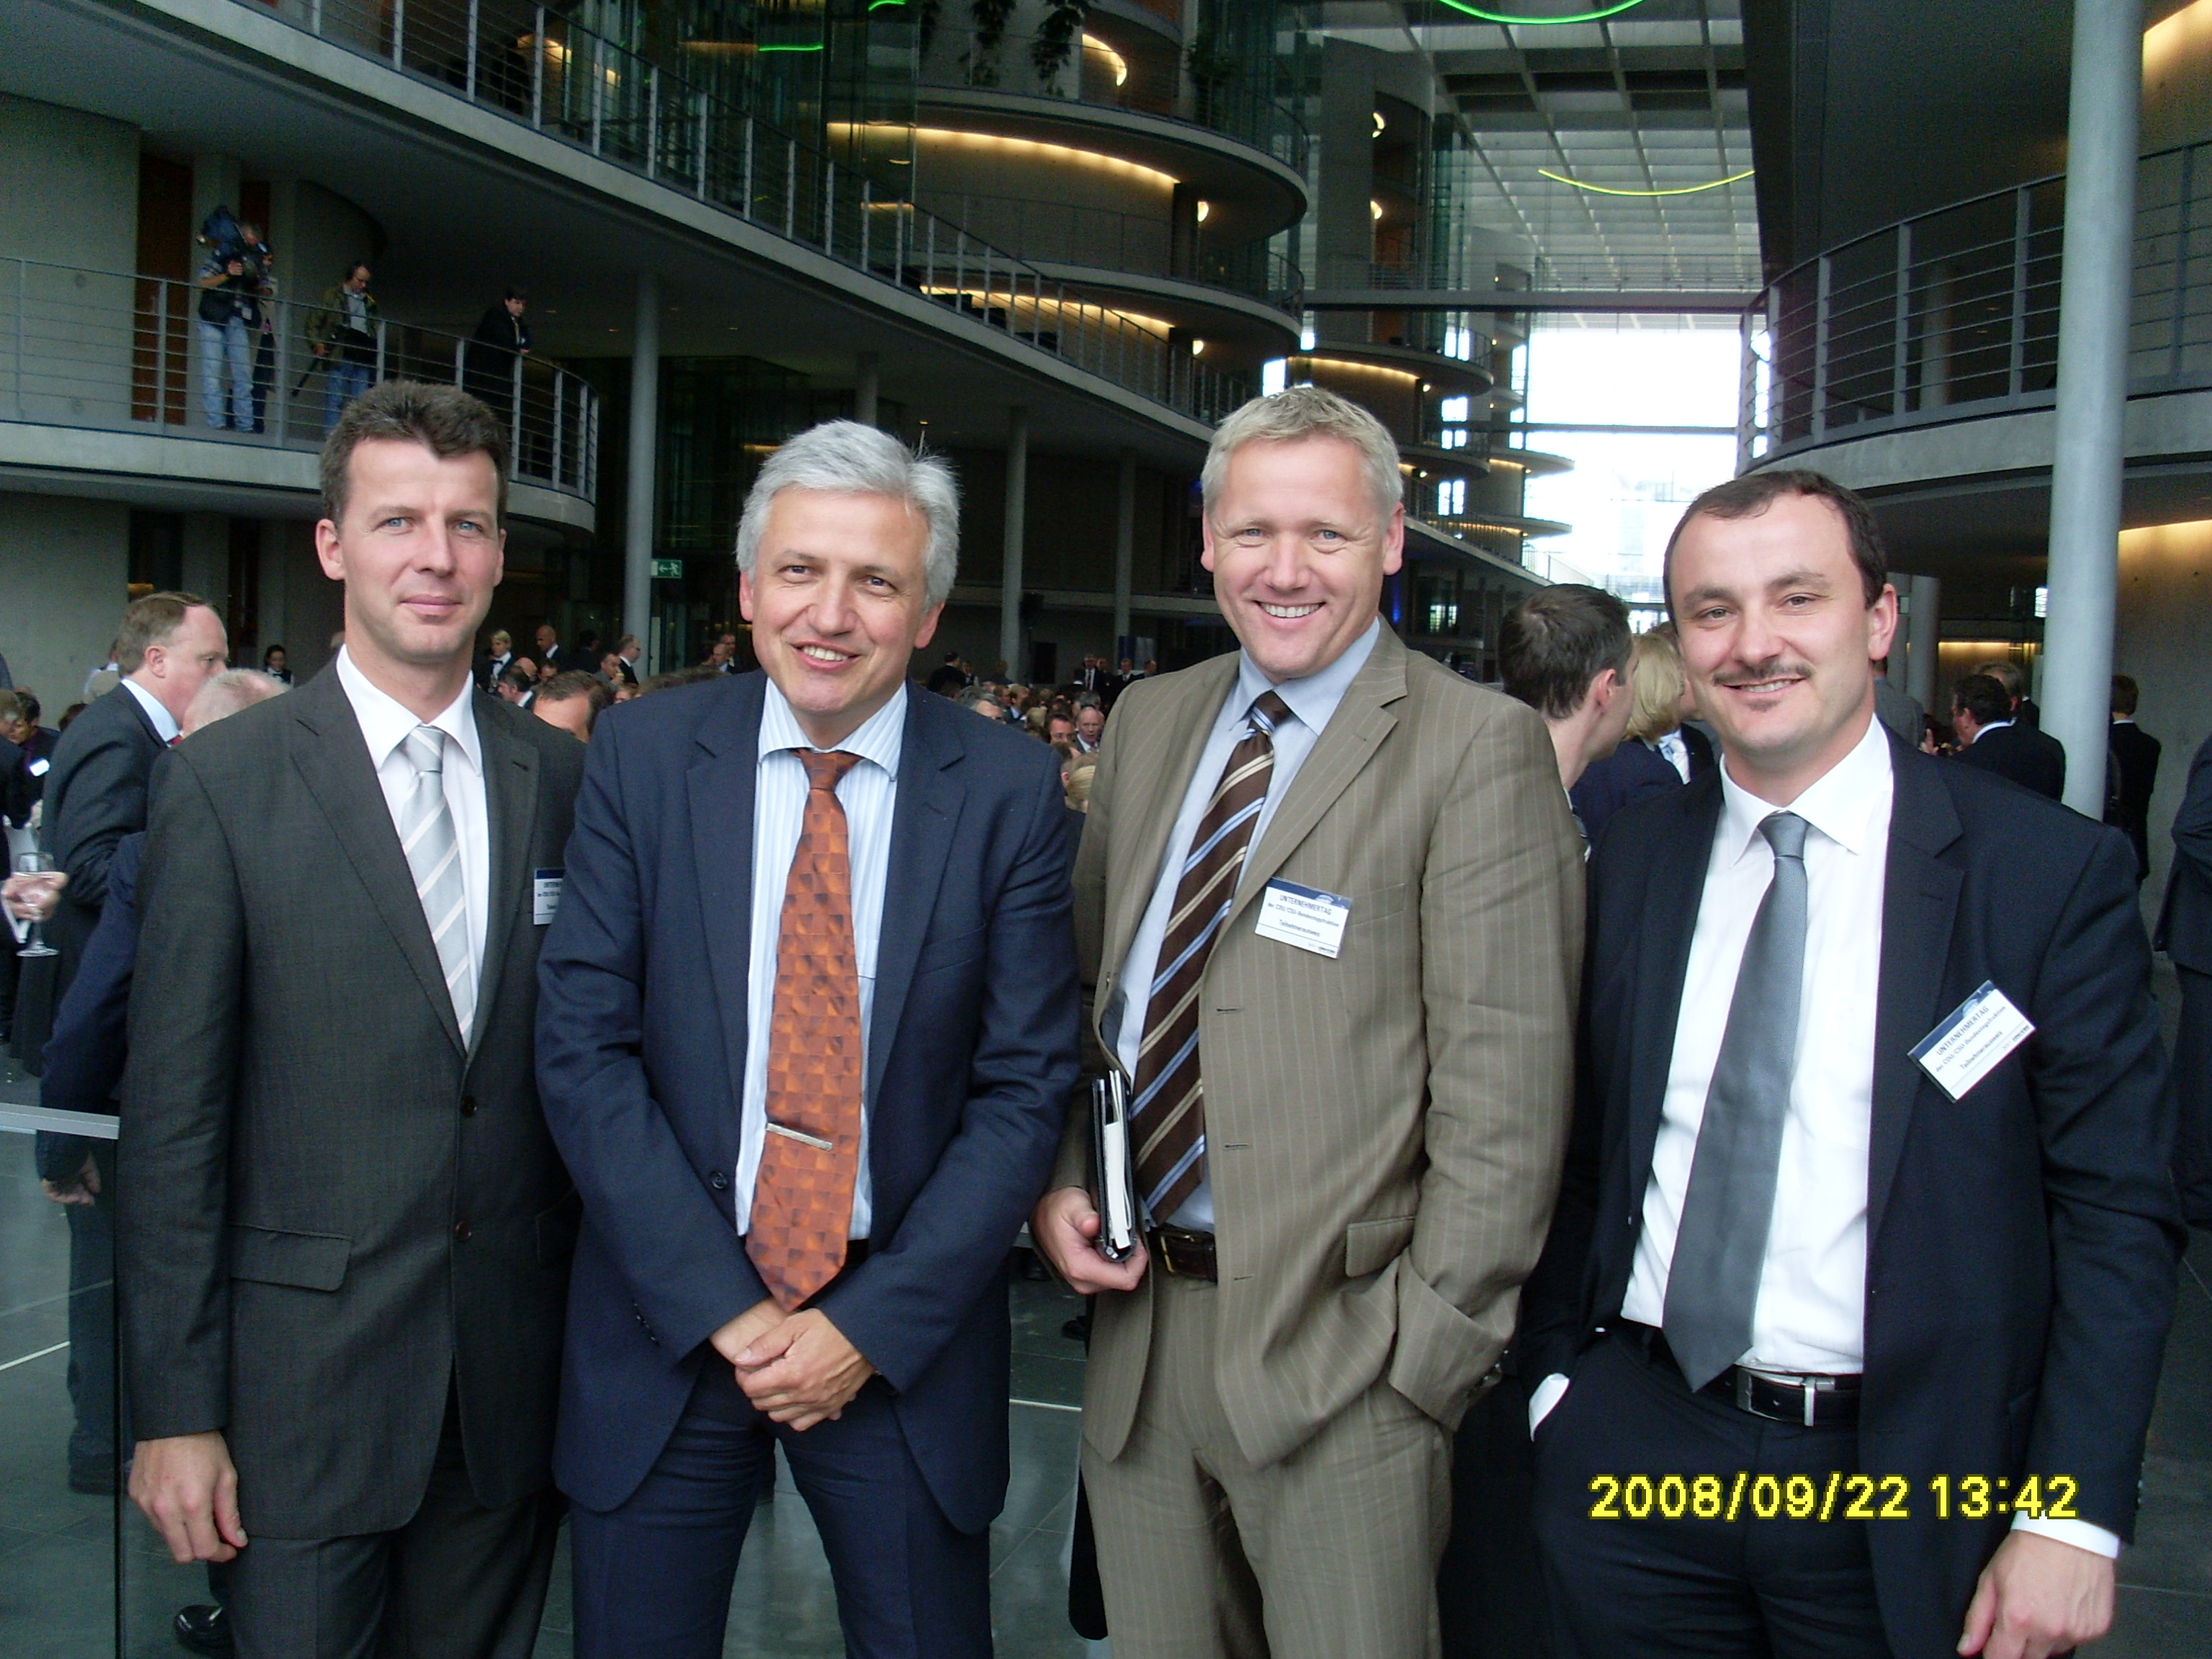 Manfred Kolbe mit den Herren Borchers, Kühne und Zieschank im Paul-Löbe-Haus des Deutschen Bundestages